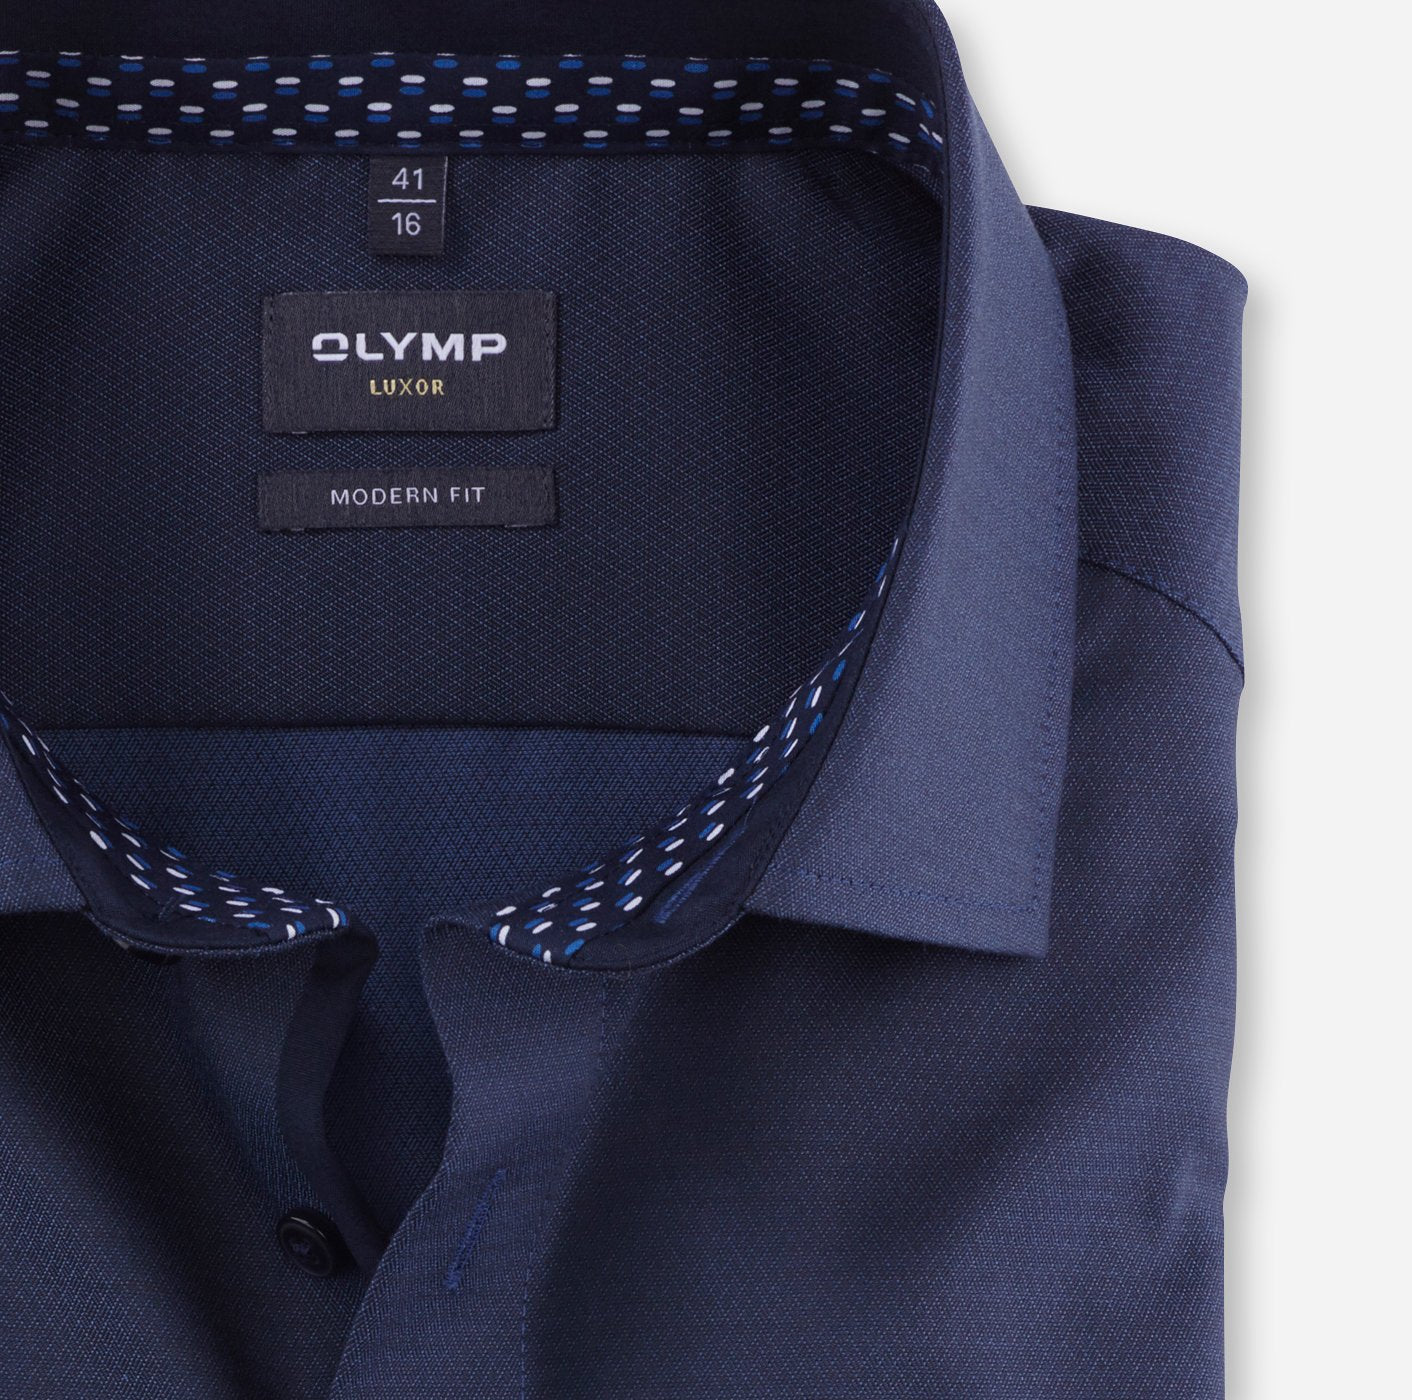 Olymp Luxor Modern Fit Formal Shirt - Matt O'Brien Fashions